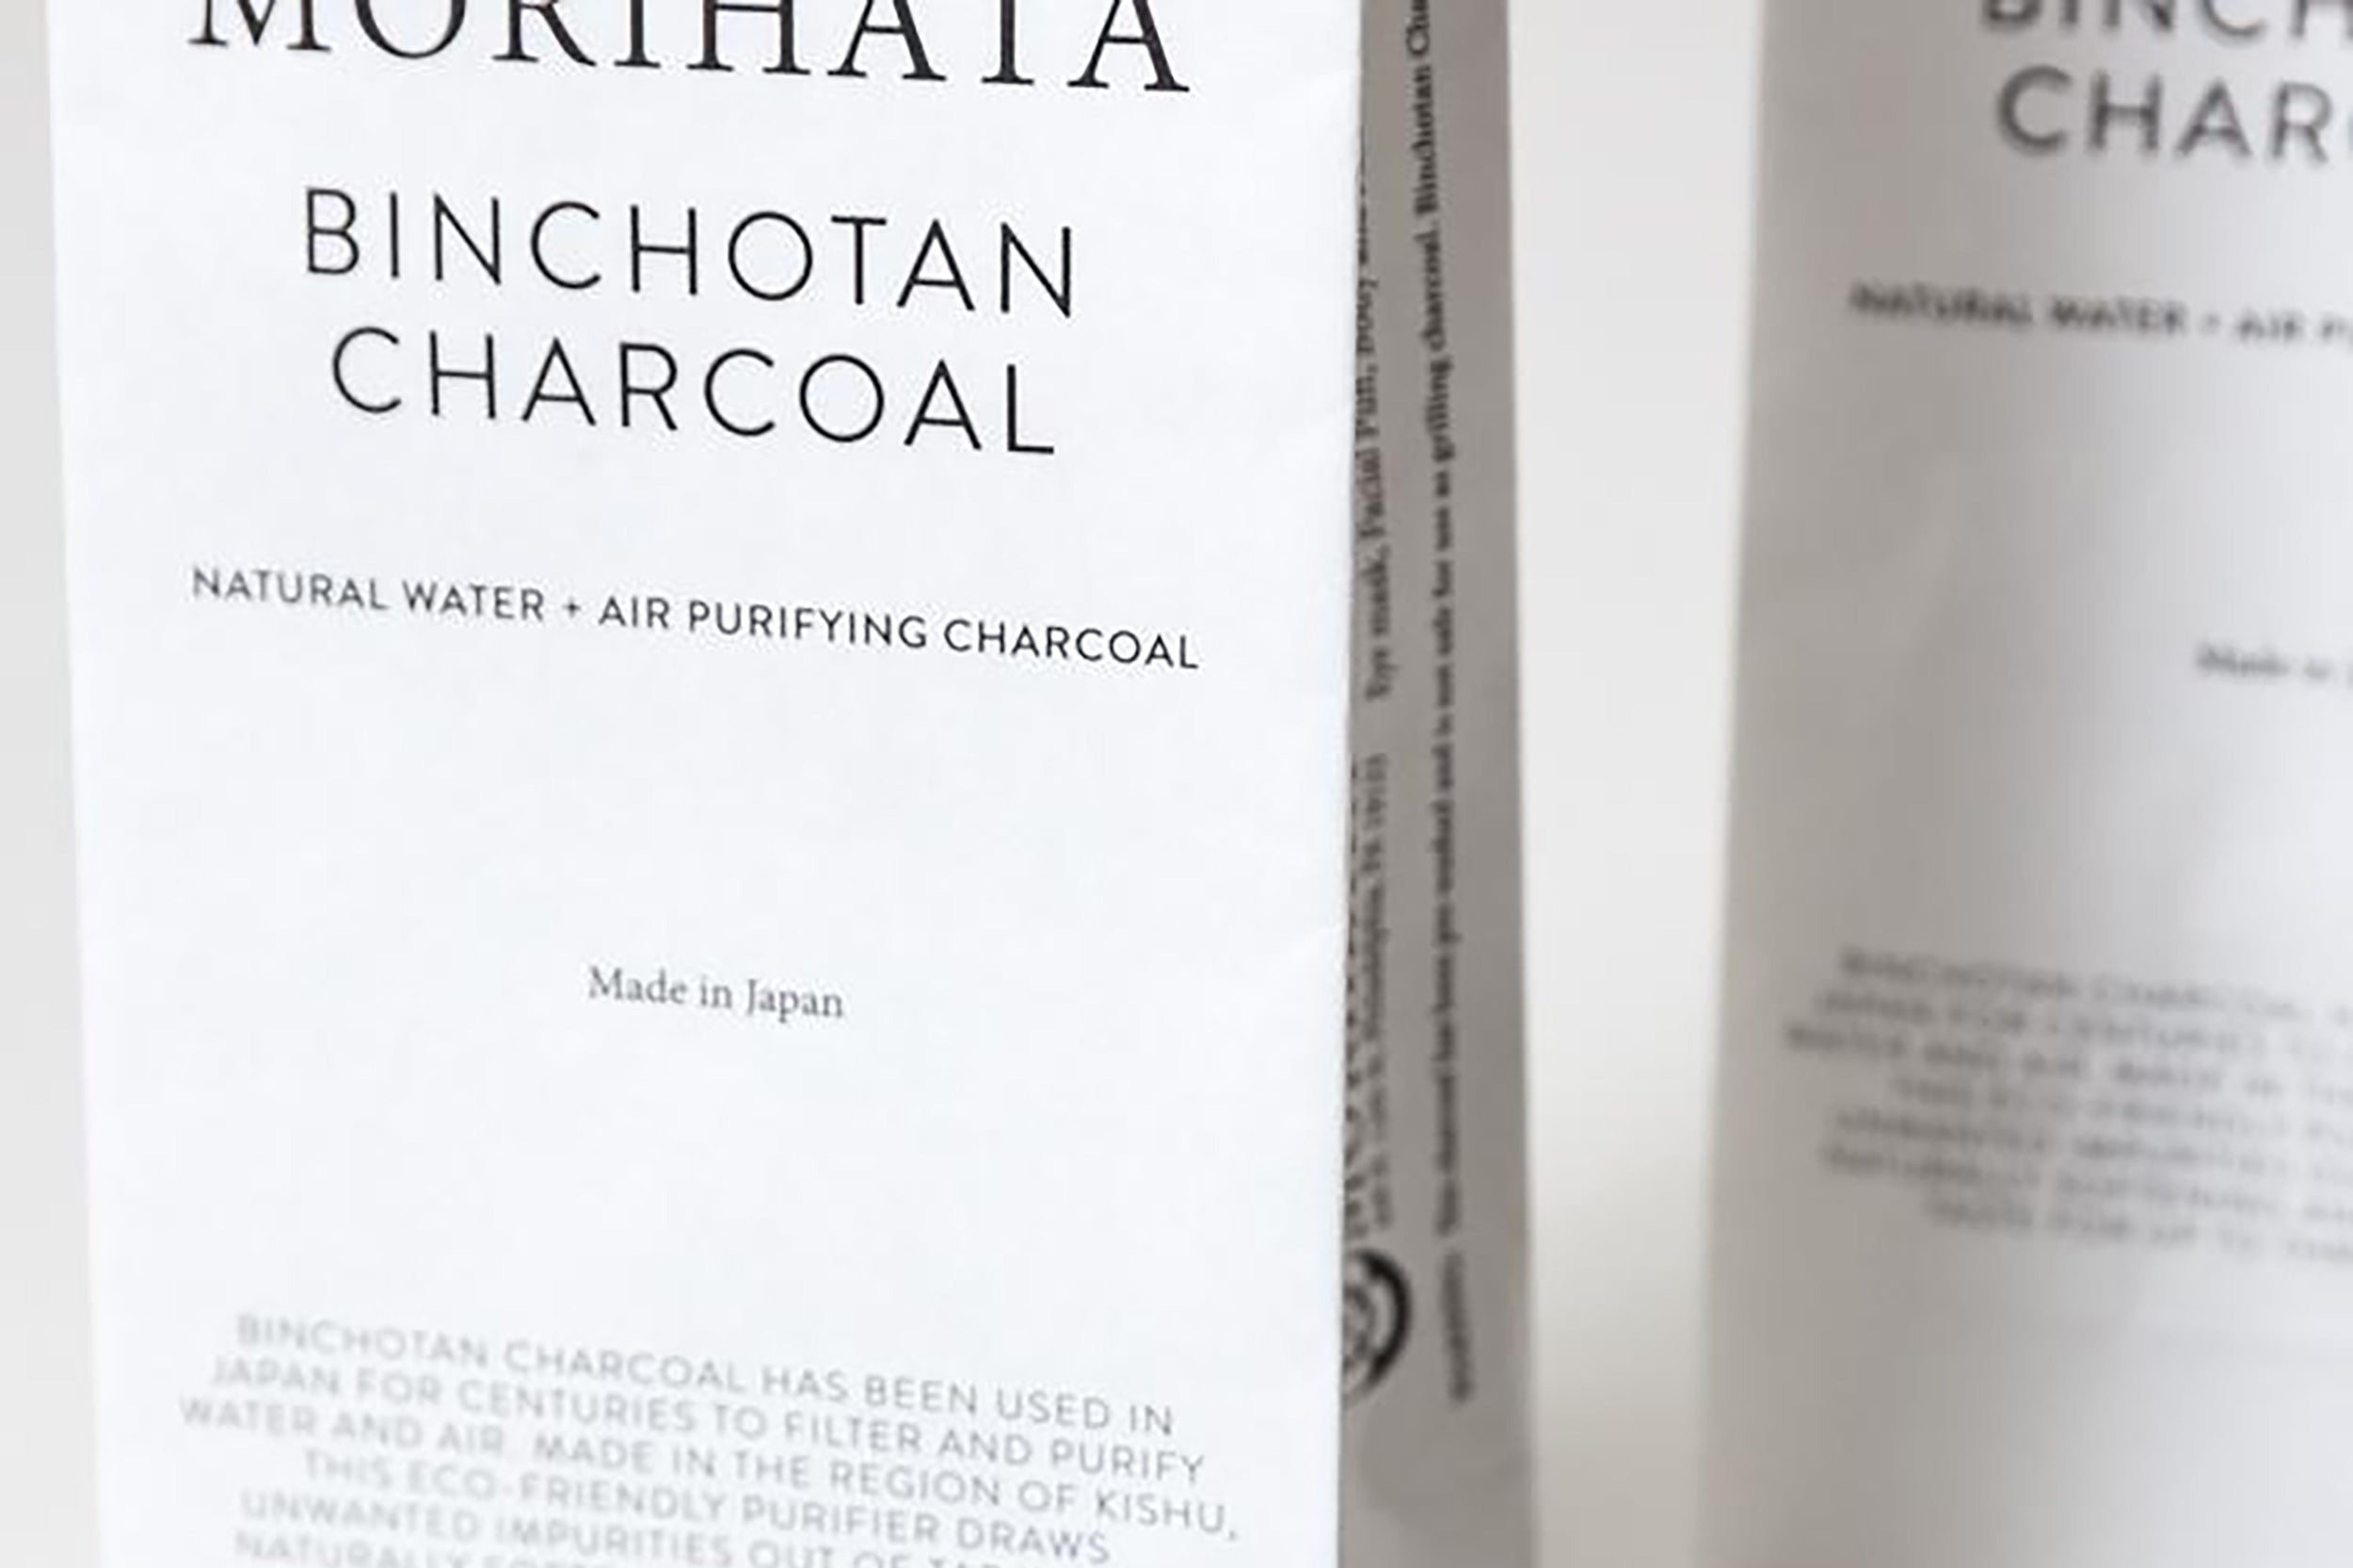 Morihata-Binchotan Charcoal Sticks